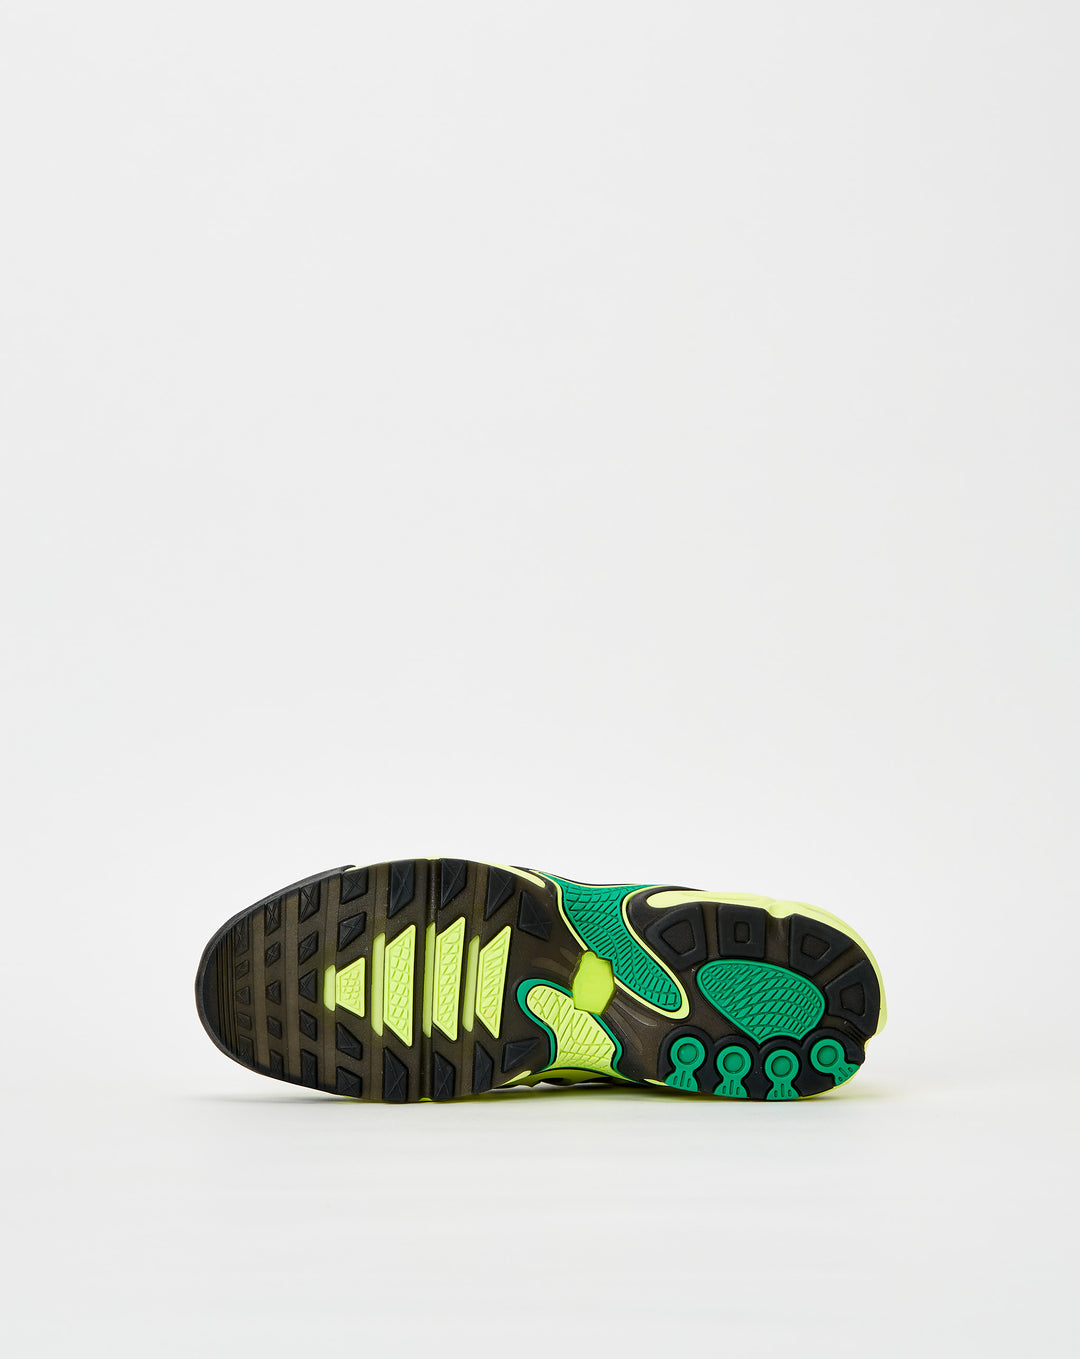 Nike nike dunk artwork images for sale on ebay shoes  - Cheap Urlfreeze Jordan outlet